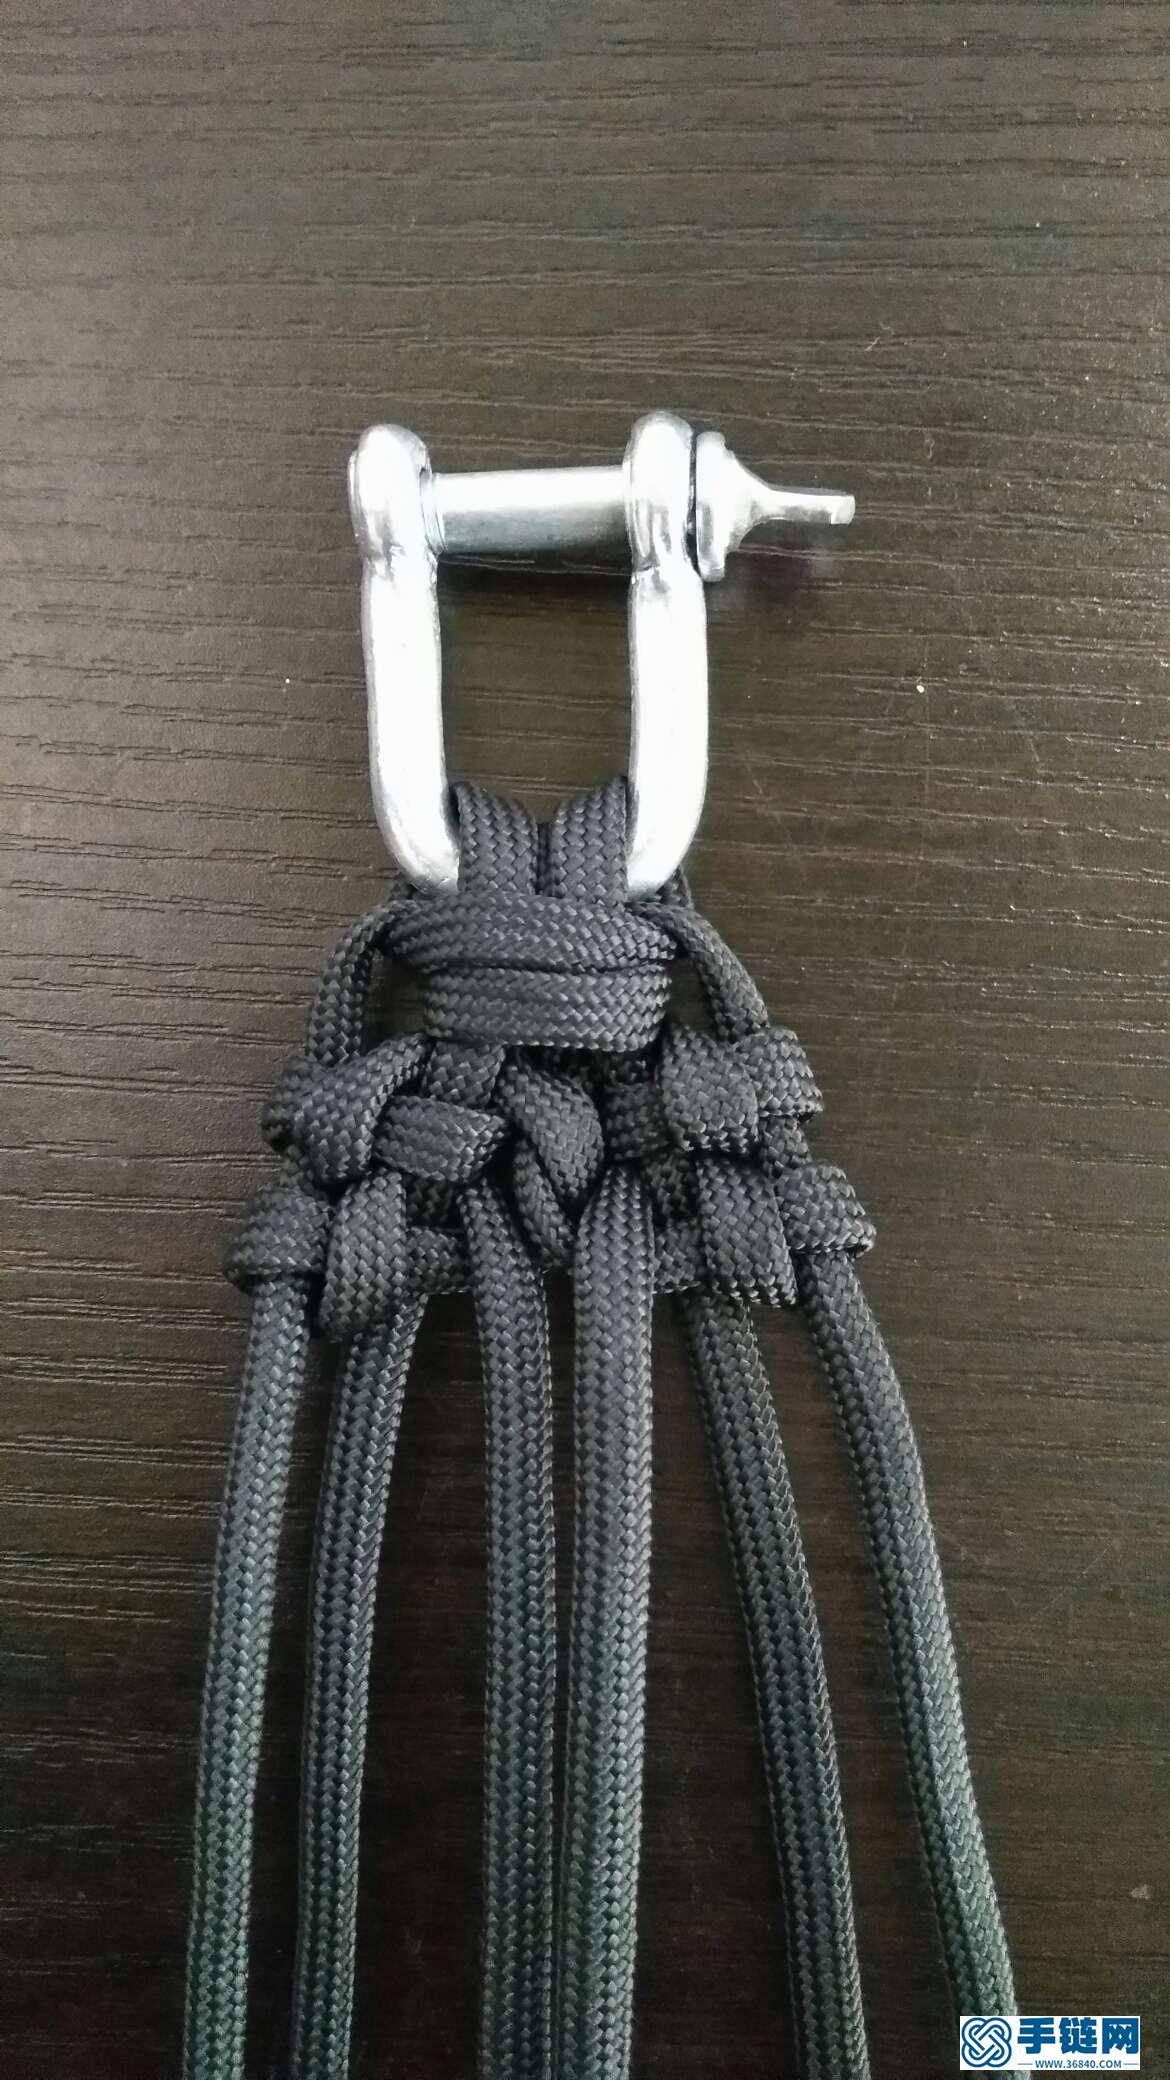 伞绳手链的编法